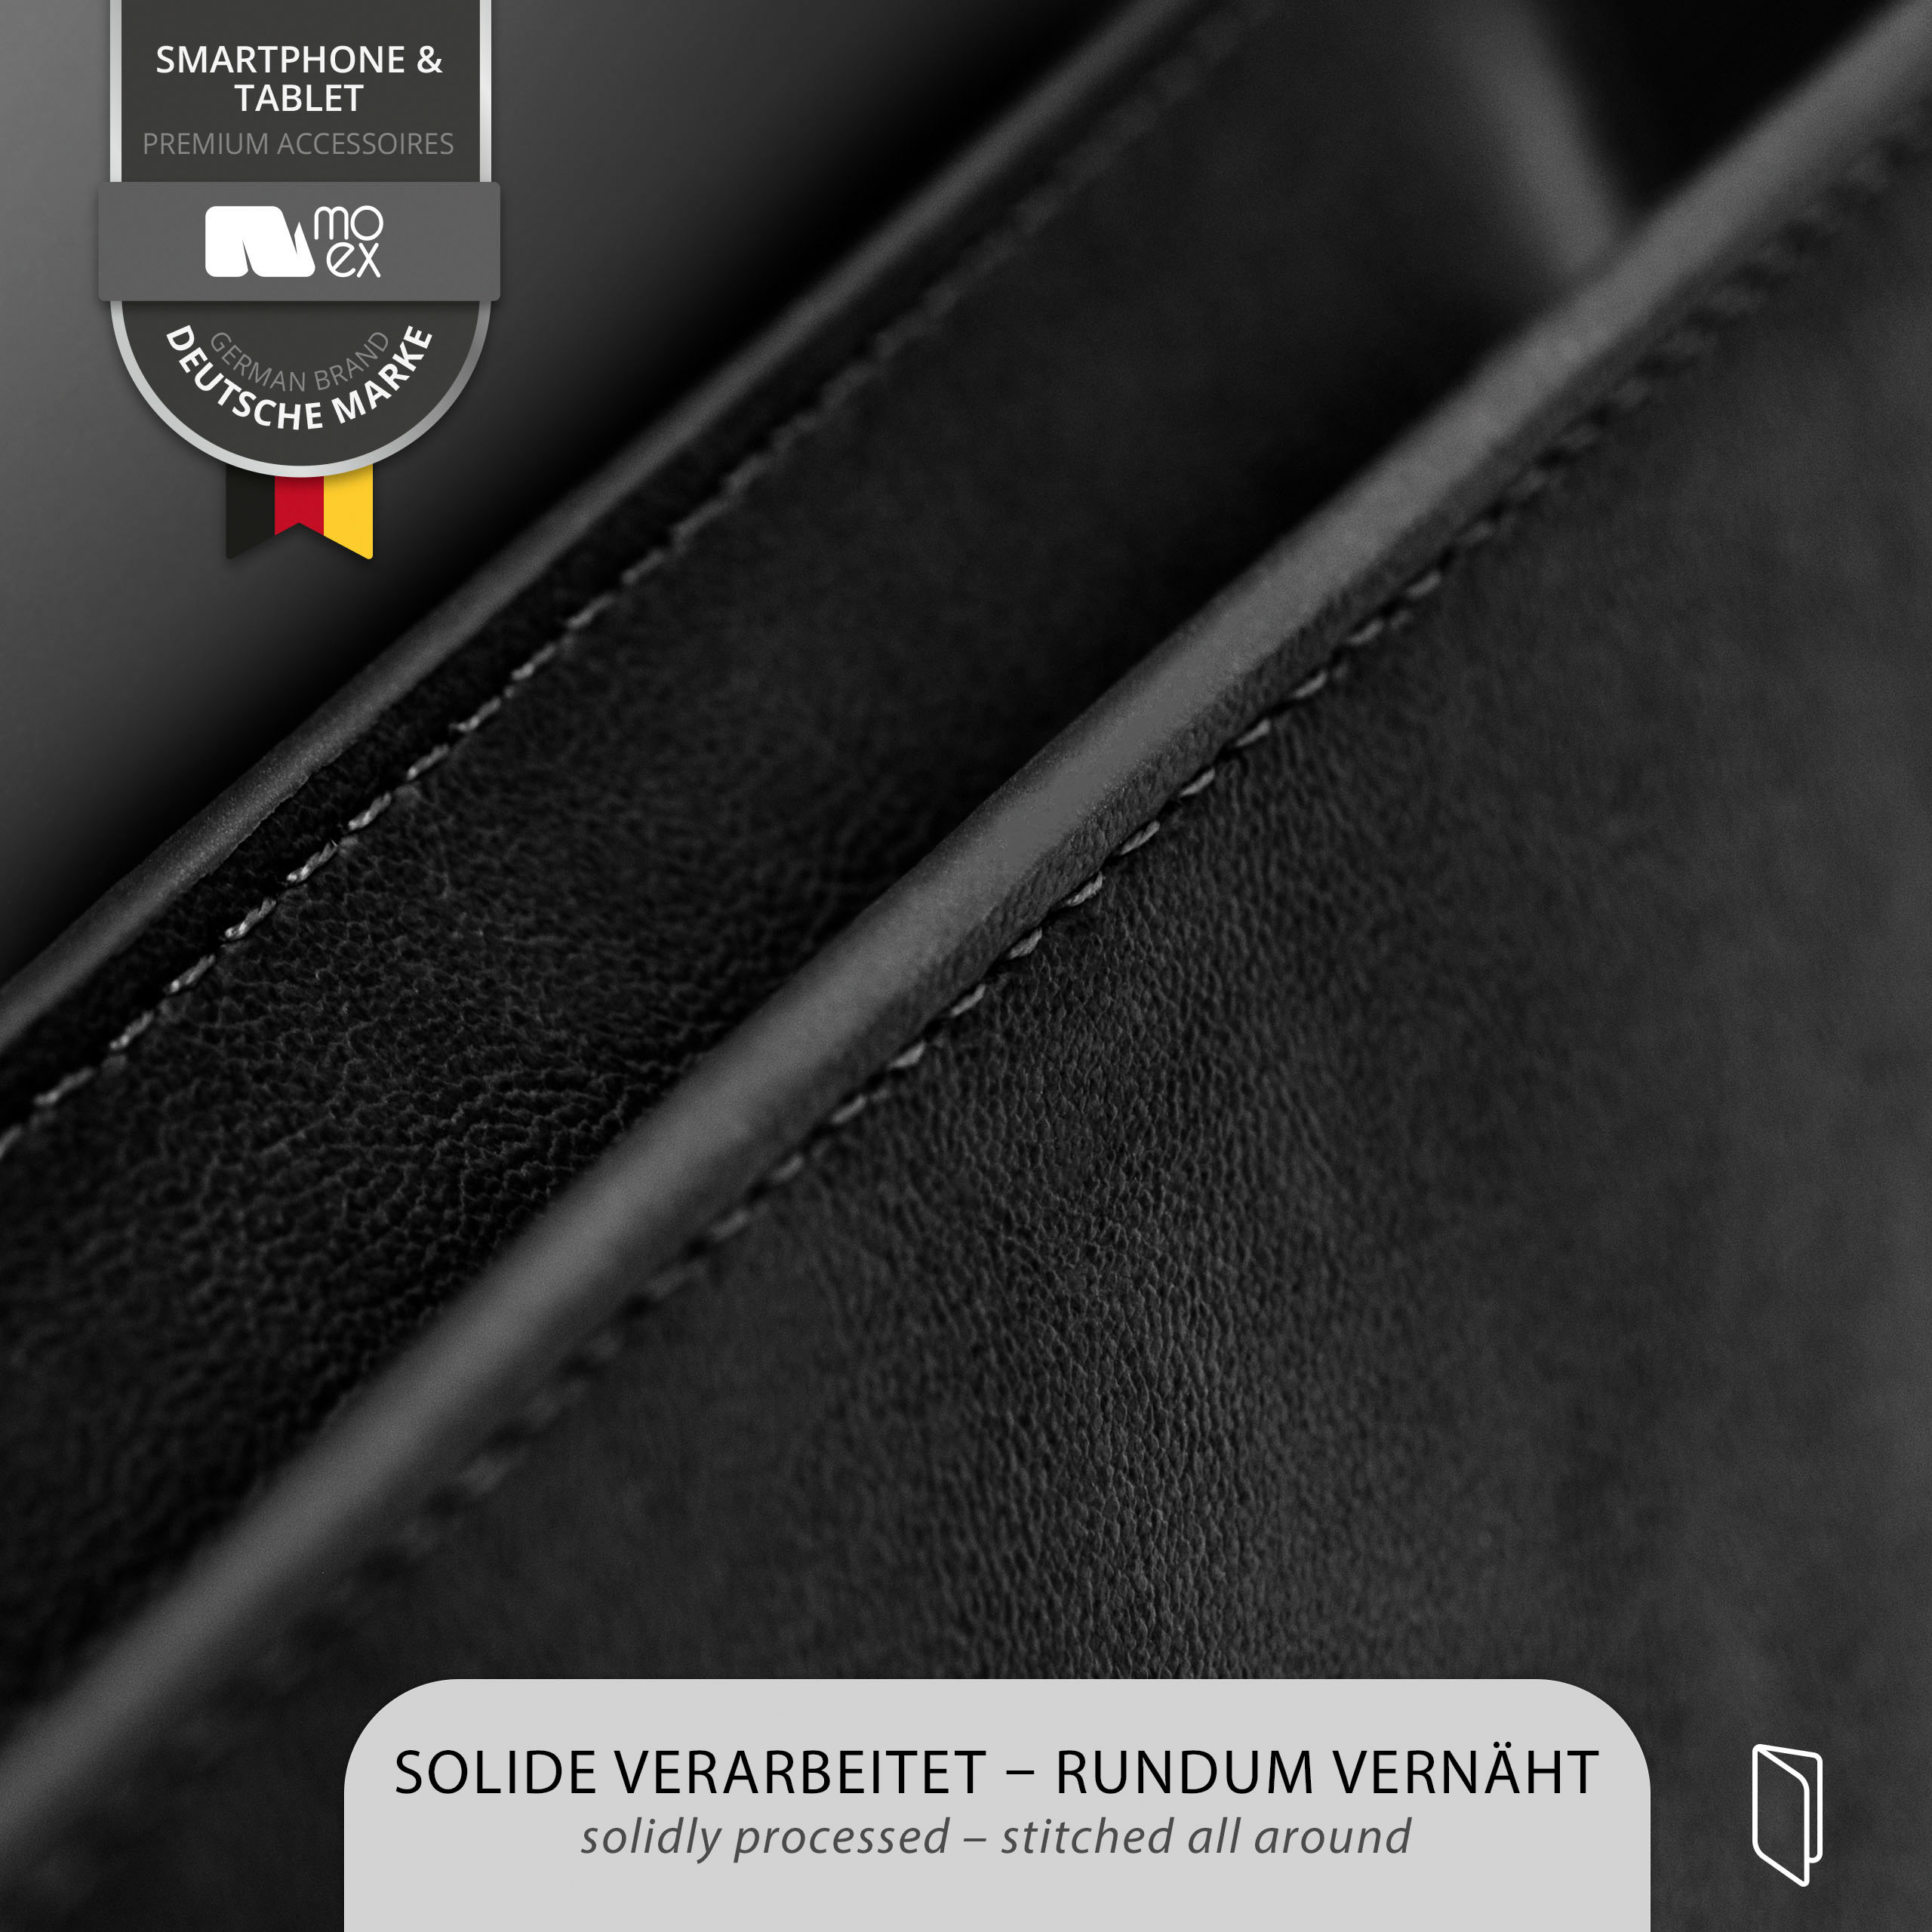 Schwarz Cover, 3.2, Flip MOEX Case, Nokia, Purse